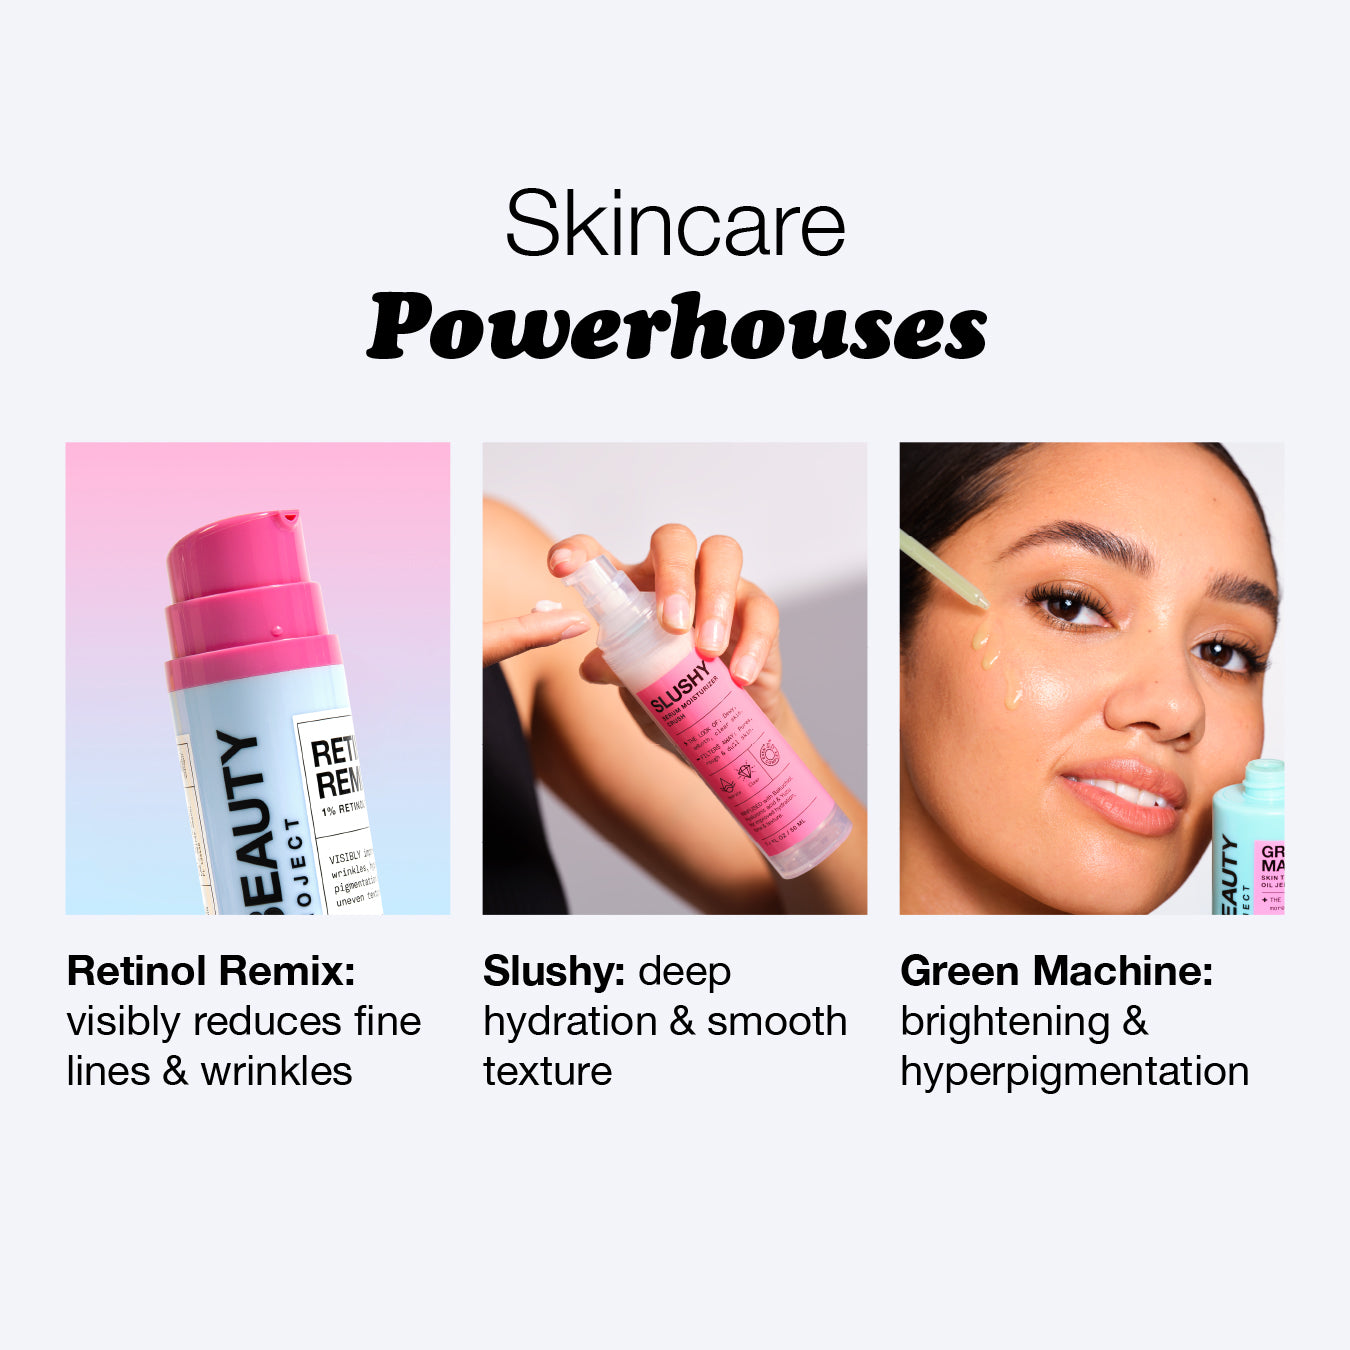 Skincare Powerhouses